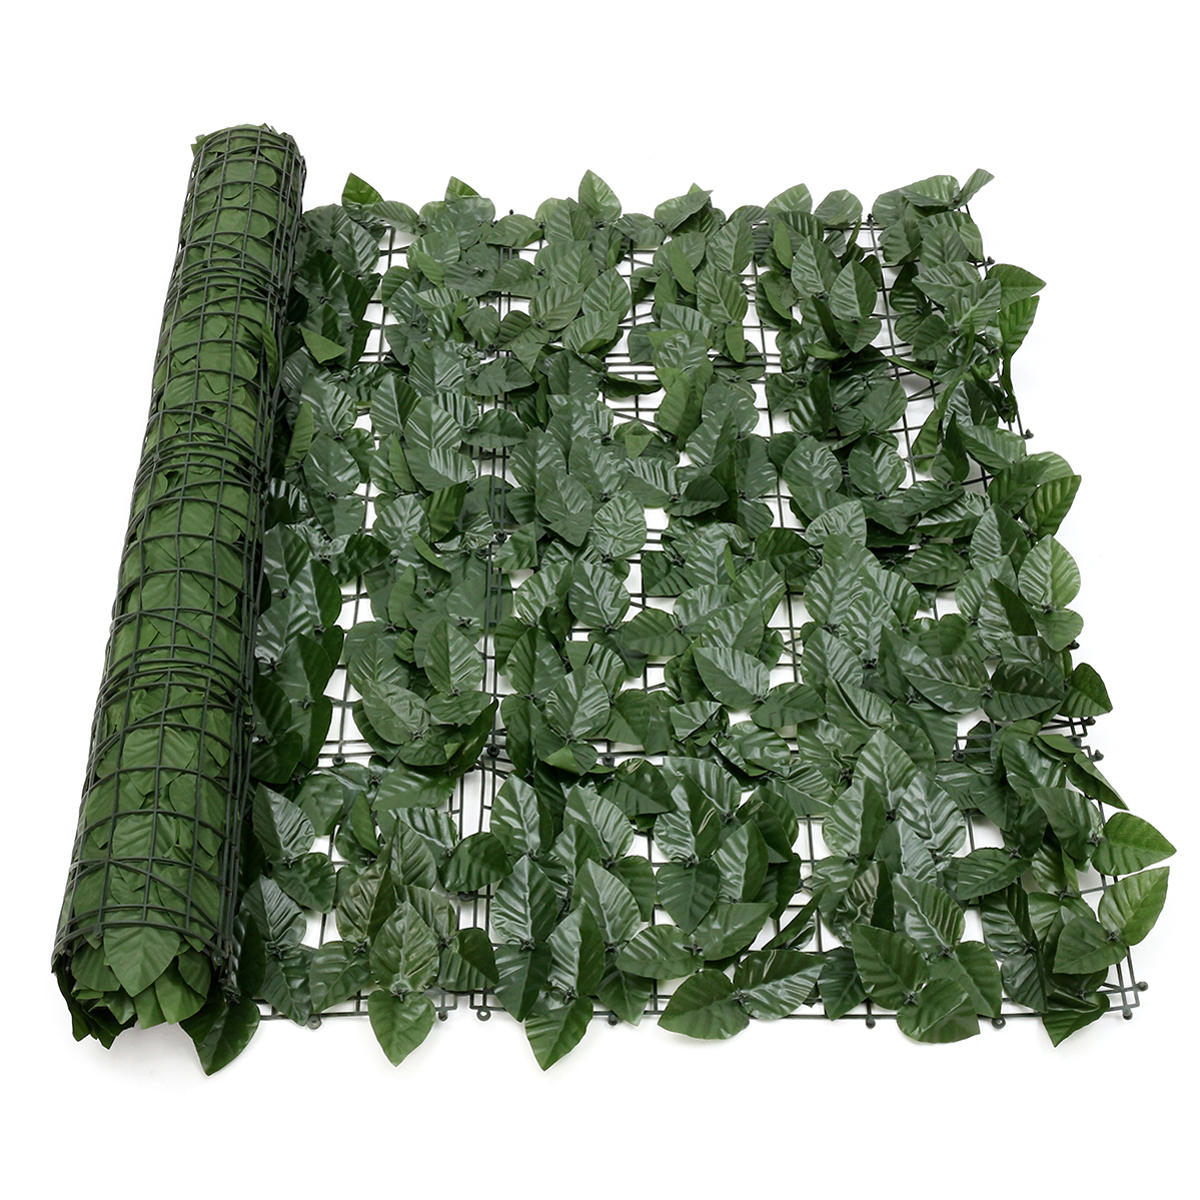 Uitbreiden 1 * 3M kunstmatige Lvy blad muur hek groene tuin scherm Hedge decoraties